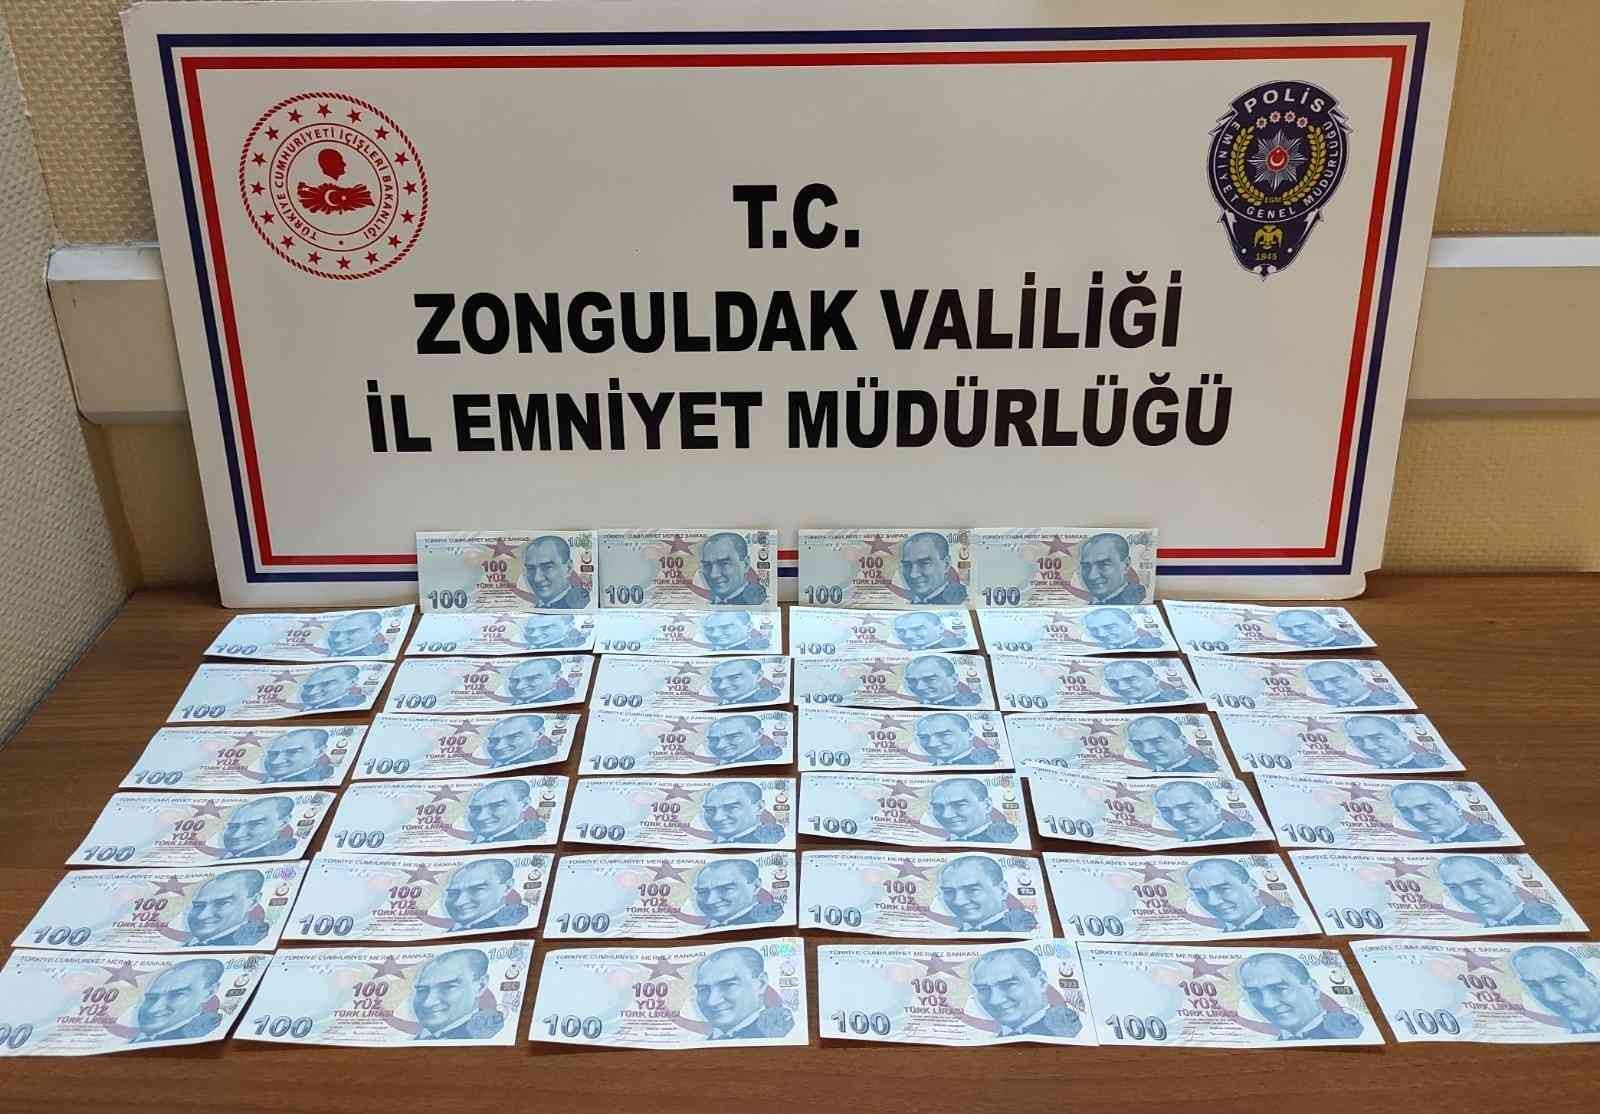 Sahte banknotları tedavüle sokan 3 şüpheli yakalandı #zonguldak